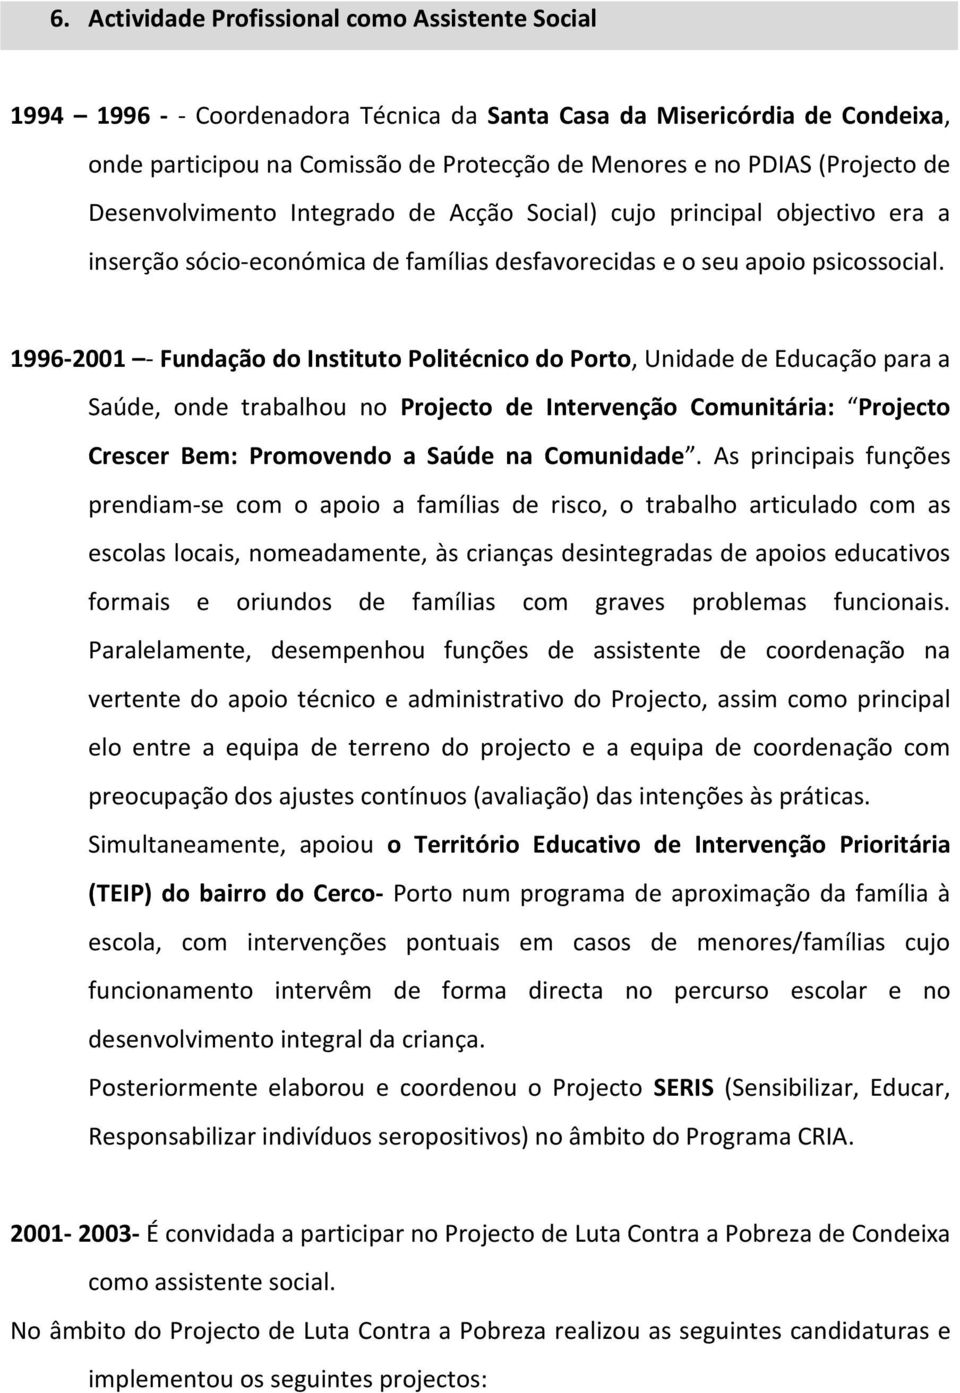 1996-2001 - Fundação do Instituto Politécnico do Porto, Unidade de Educação para a Saúde, onde trabalhou no Projecto de Intervenção Comunitária: Projecto Crescer Bem: Promovendo a Saúde na Comunidade.